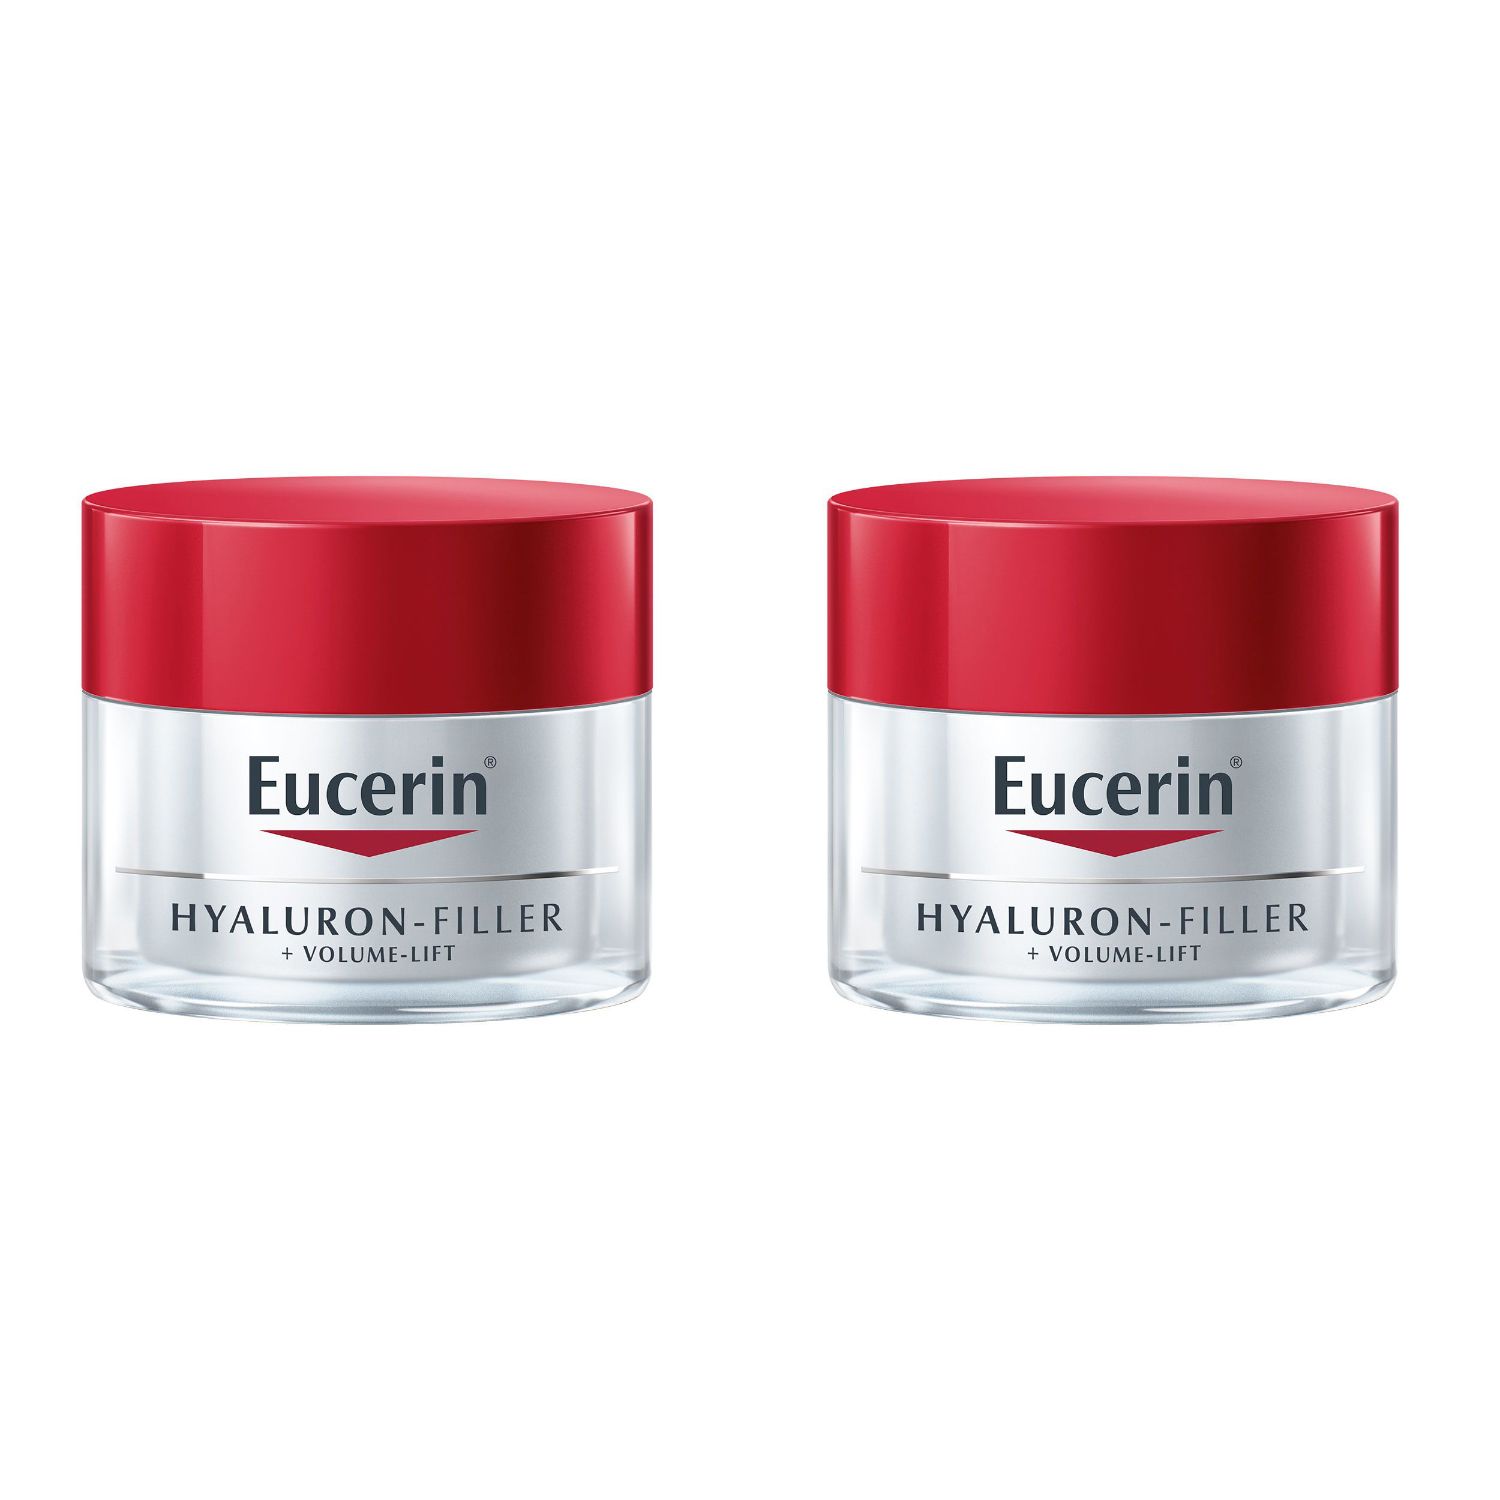 Eucerin® Hyaluron Filler + Volume Lift Soin de Jour Peau Normale à Mixte Spf15 50ml